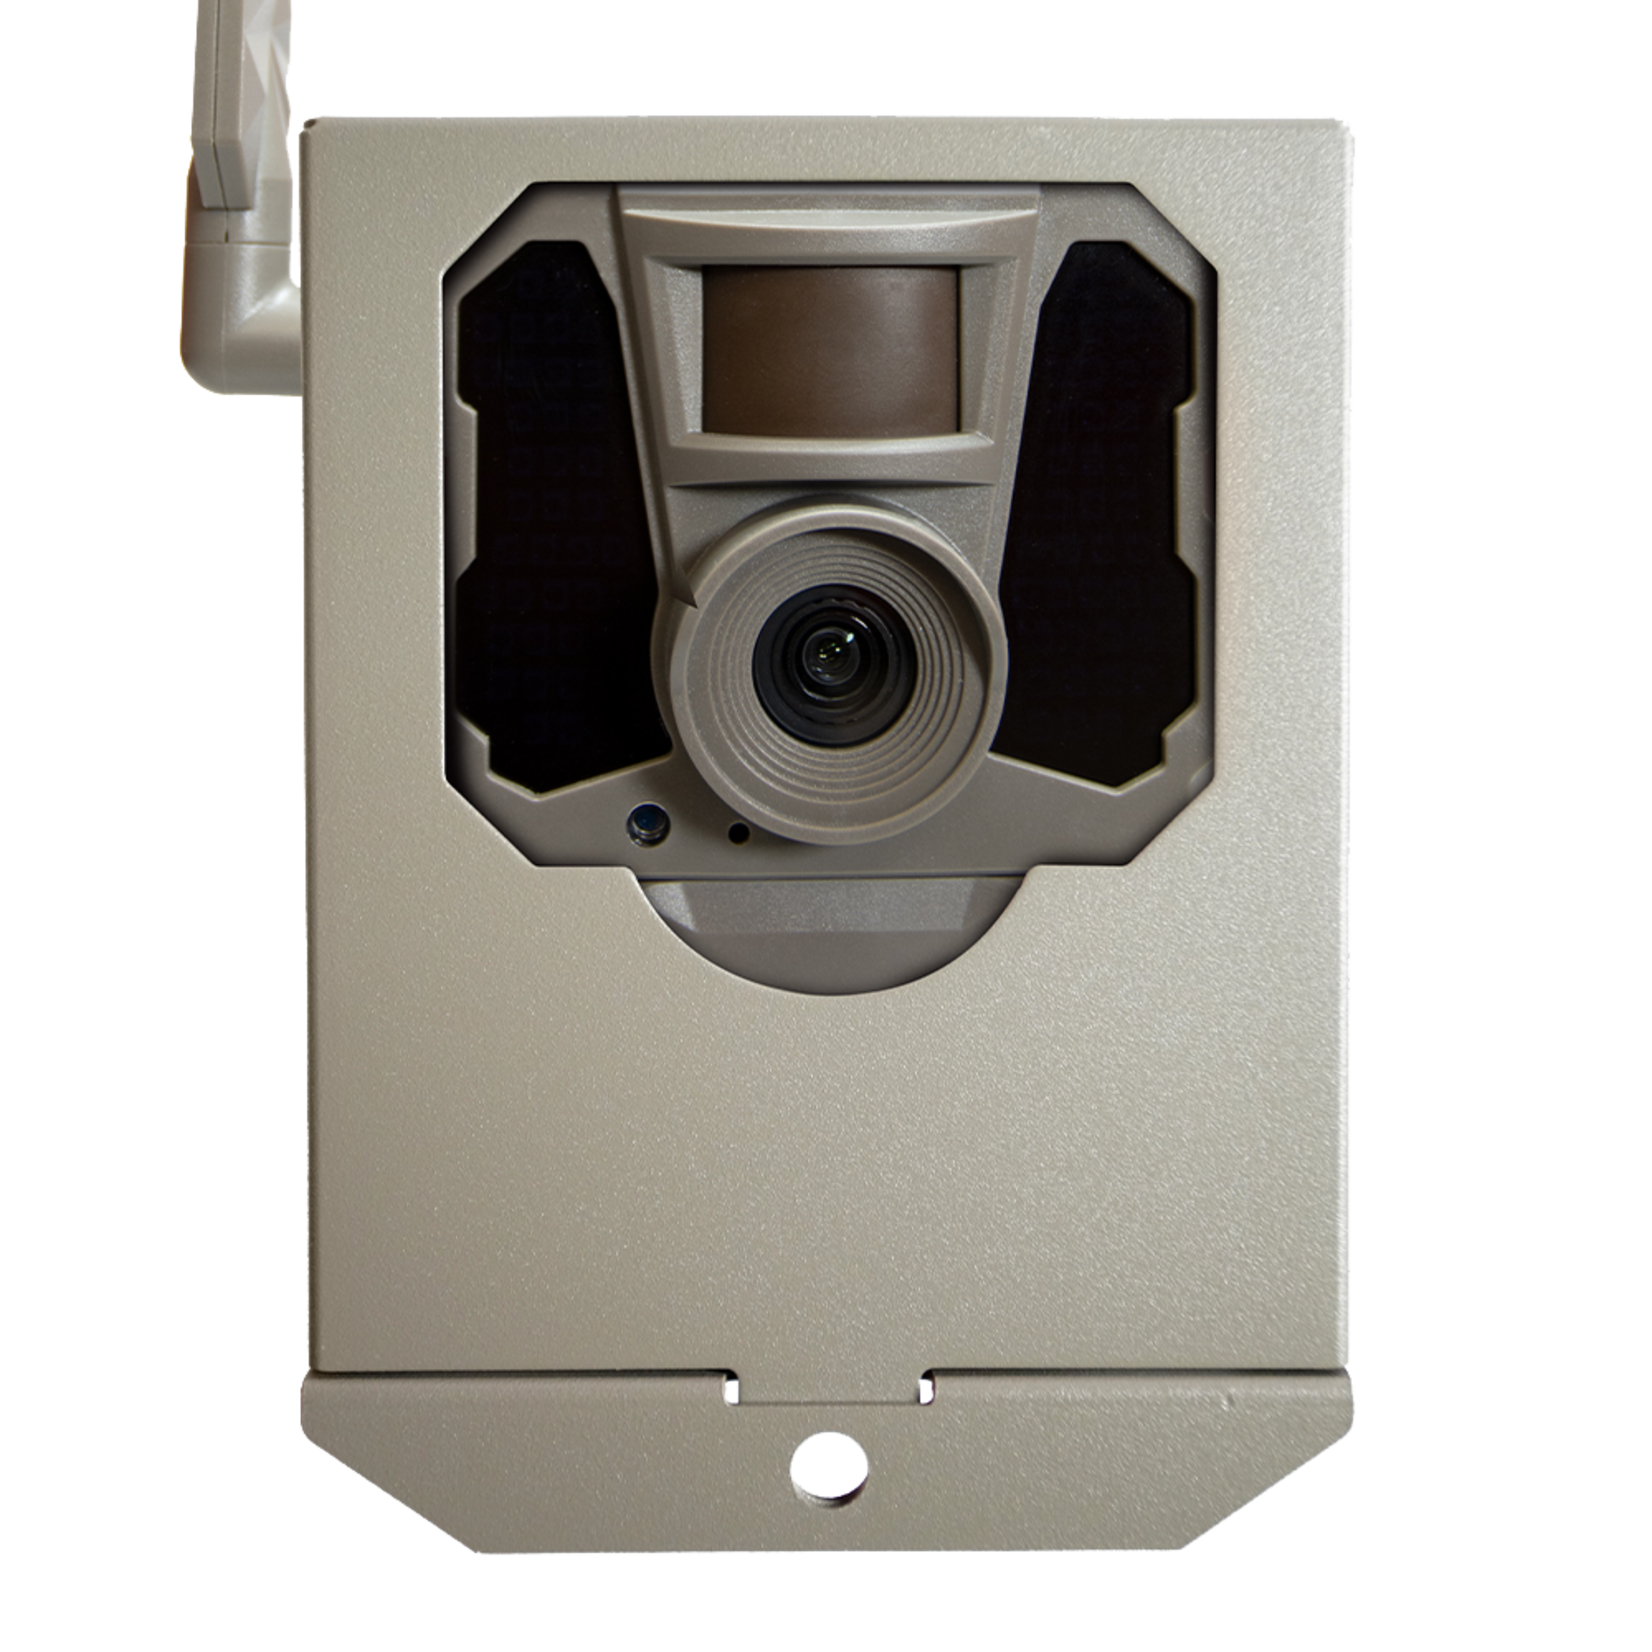 Tactacam Tactacam Reveal Trail Camera Security Box X Series 2